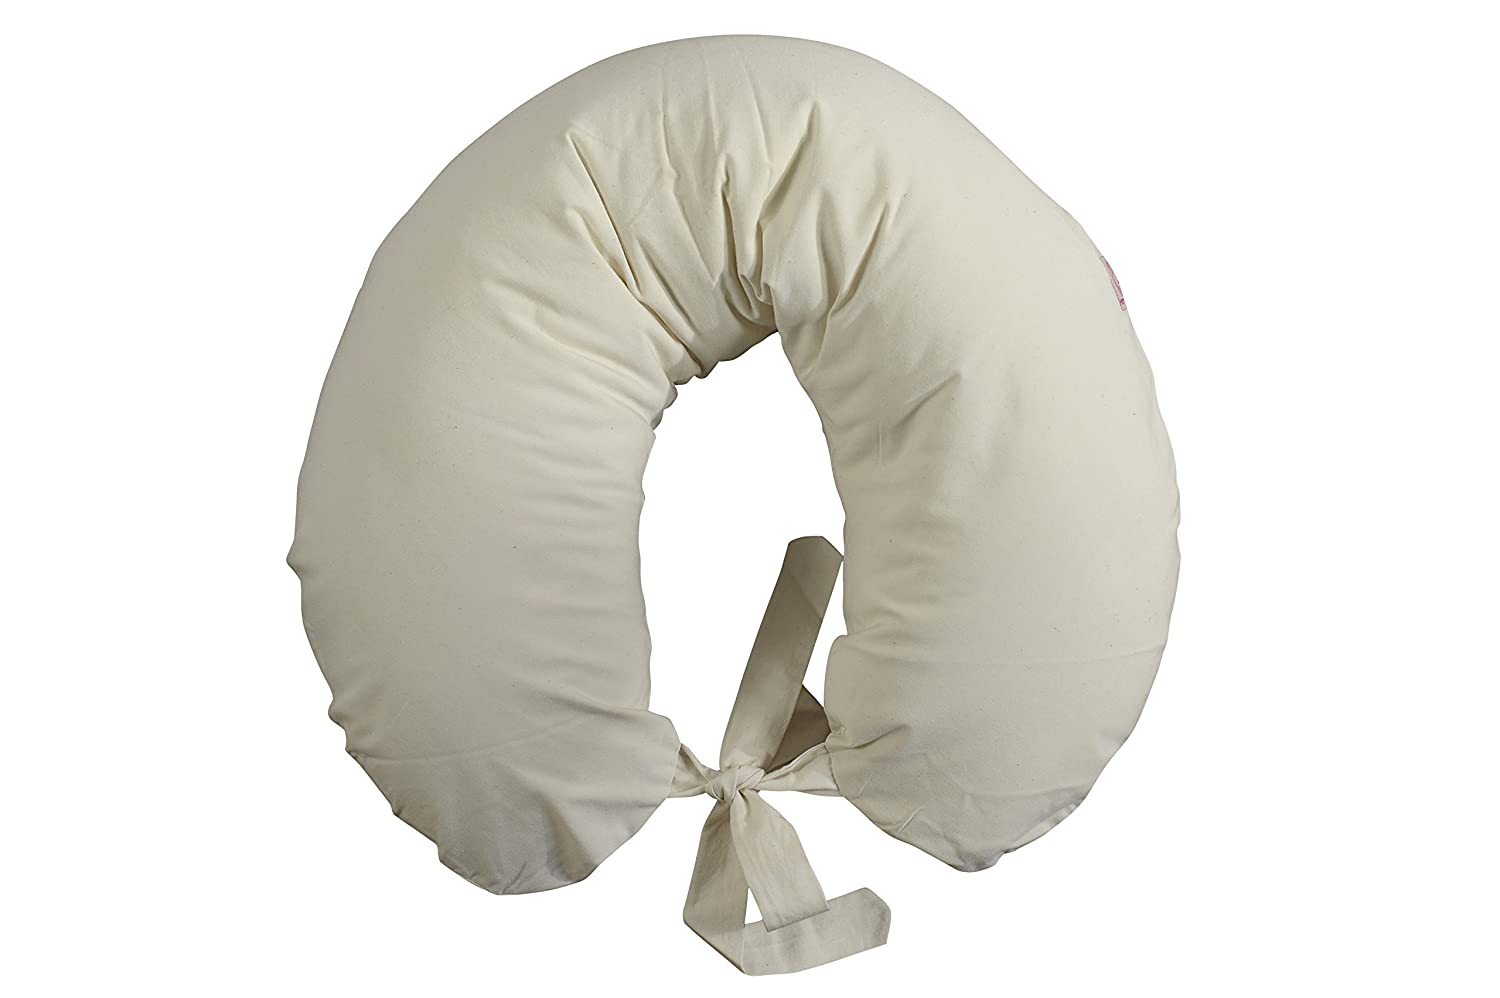 Nursing Pillow, Filled with Polystyrene Balls Polystyrene) Ecru